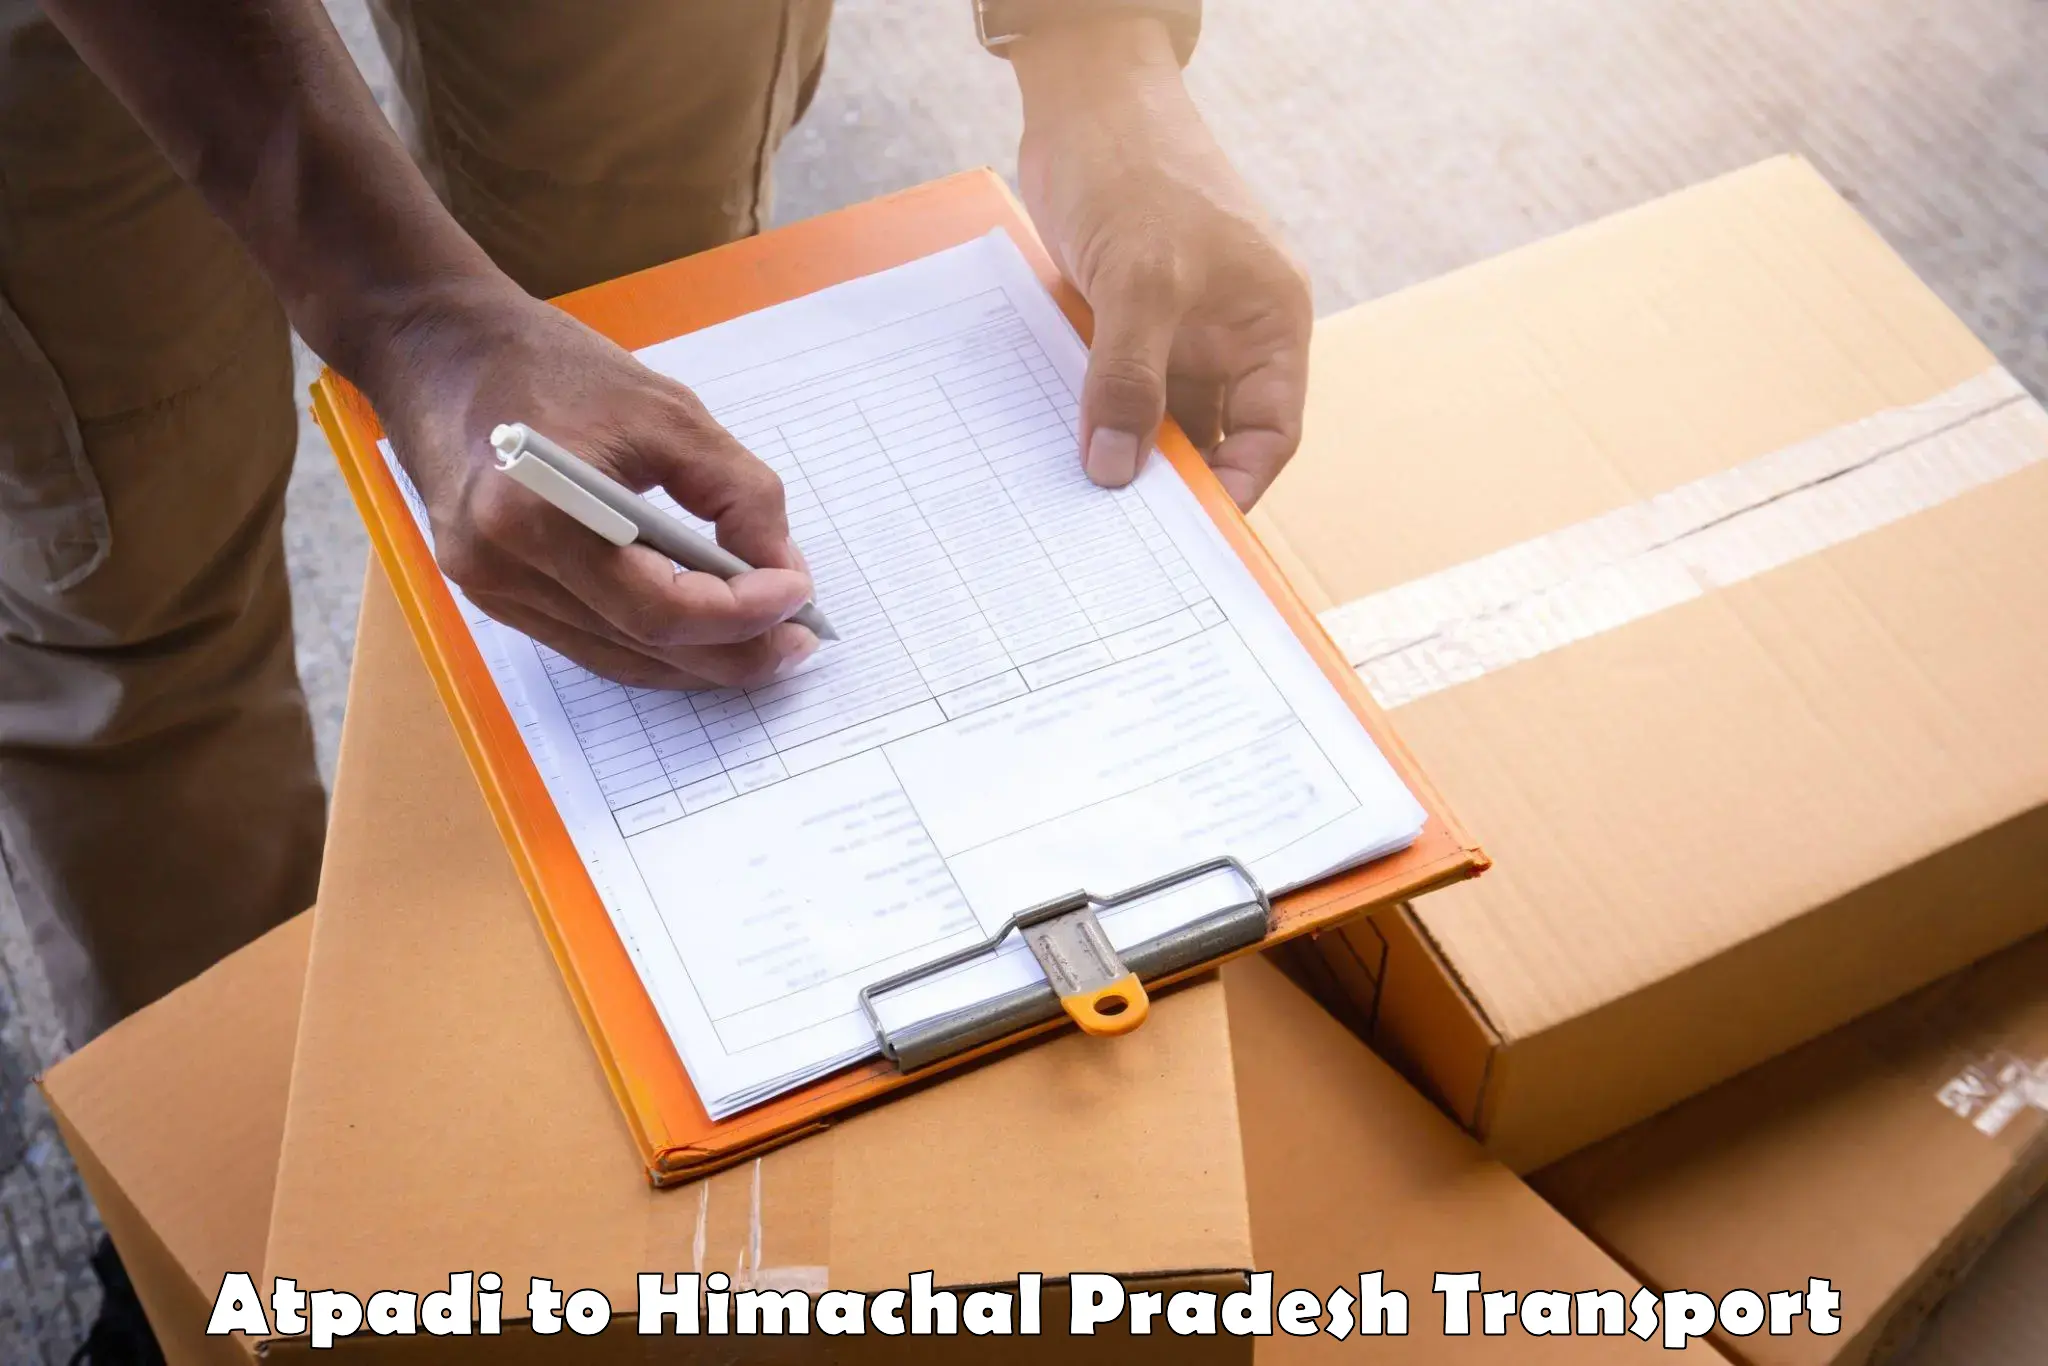 Interstate goods transport Atpadi to Himachal Pradesh